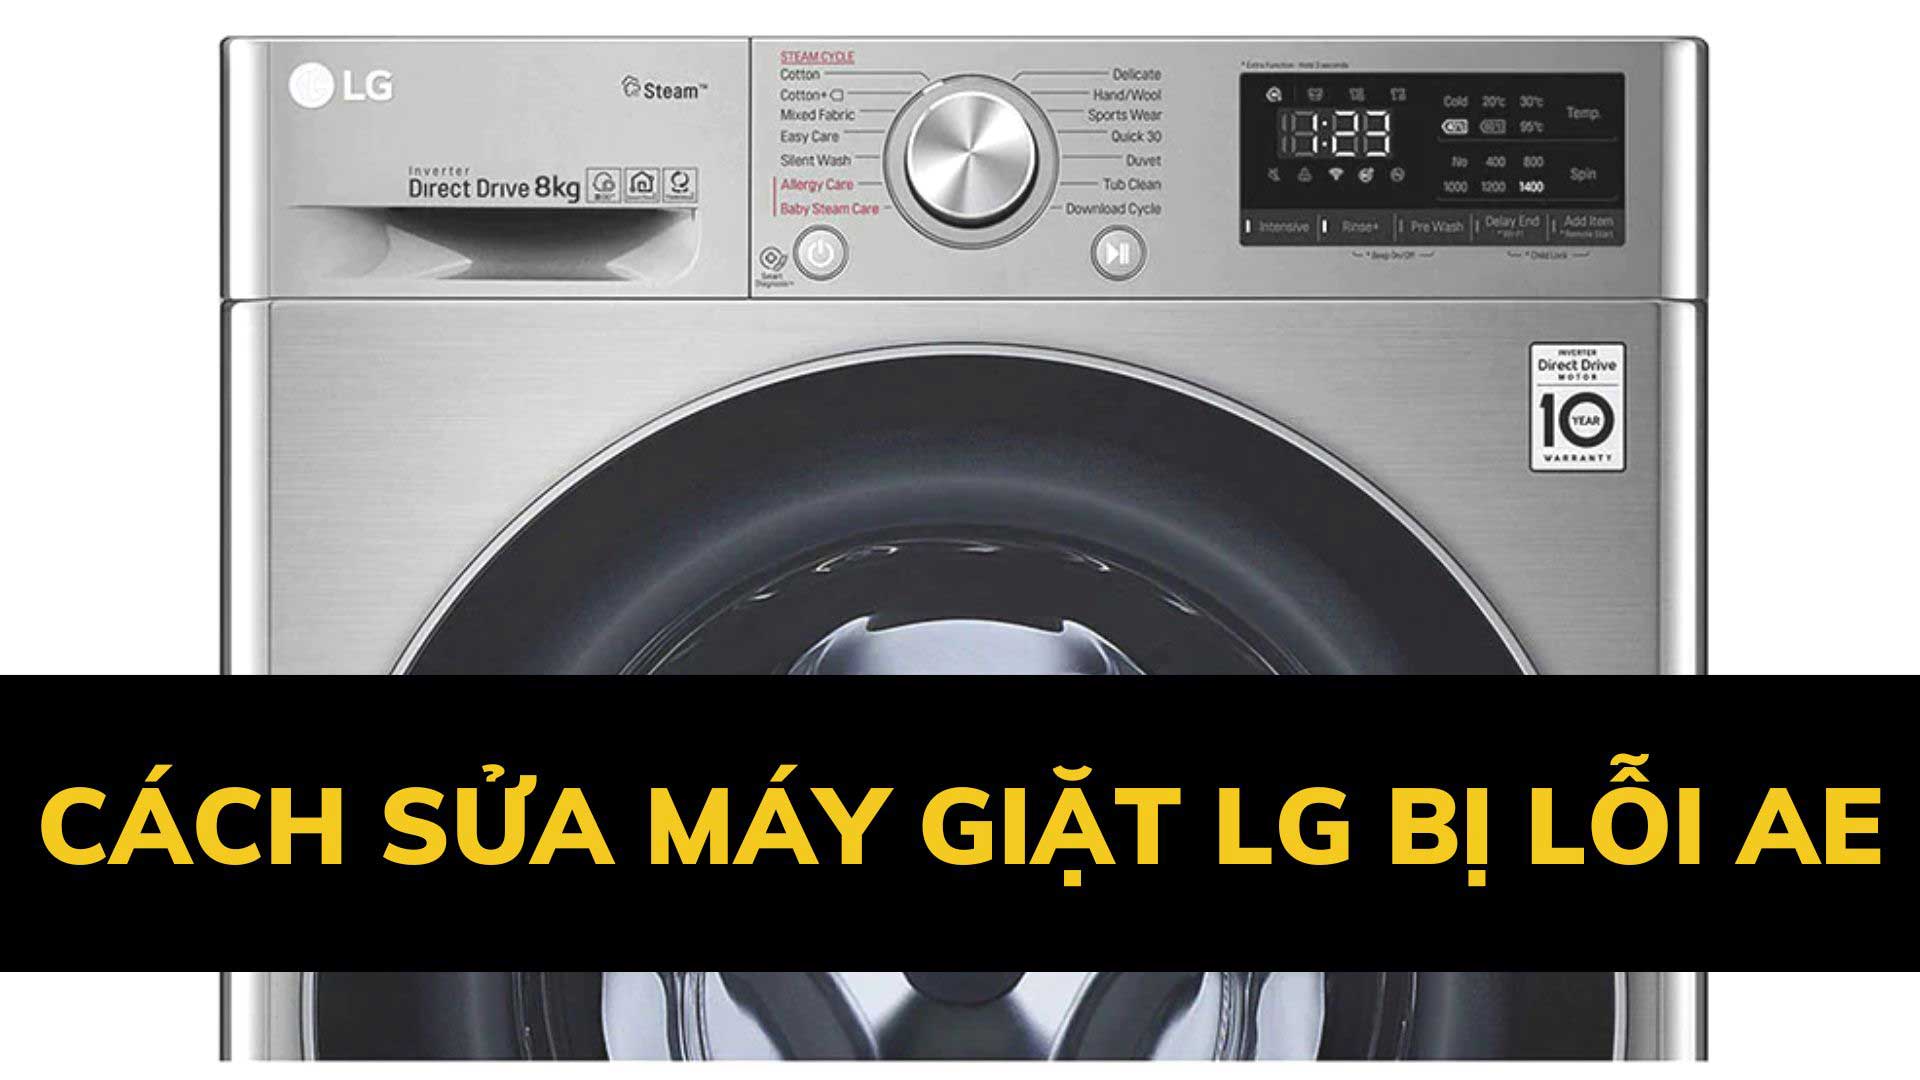 Cách sửa máy giặt LG bị lỗi AE